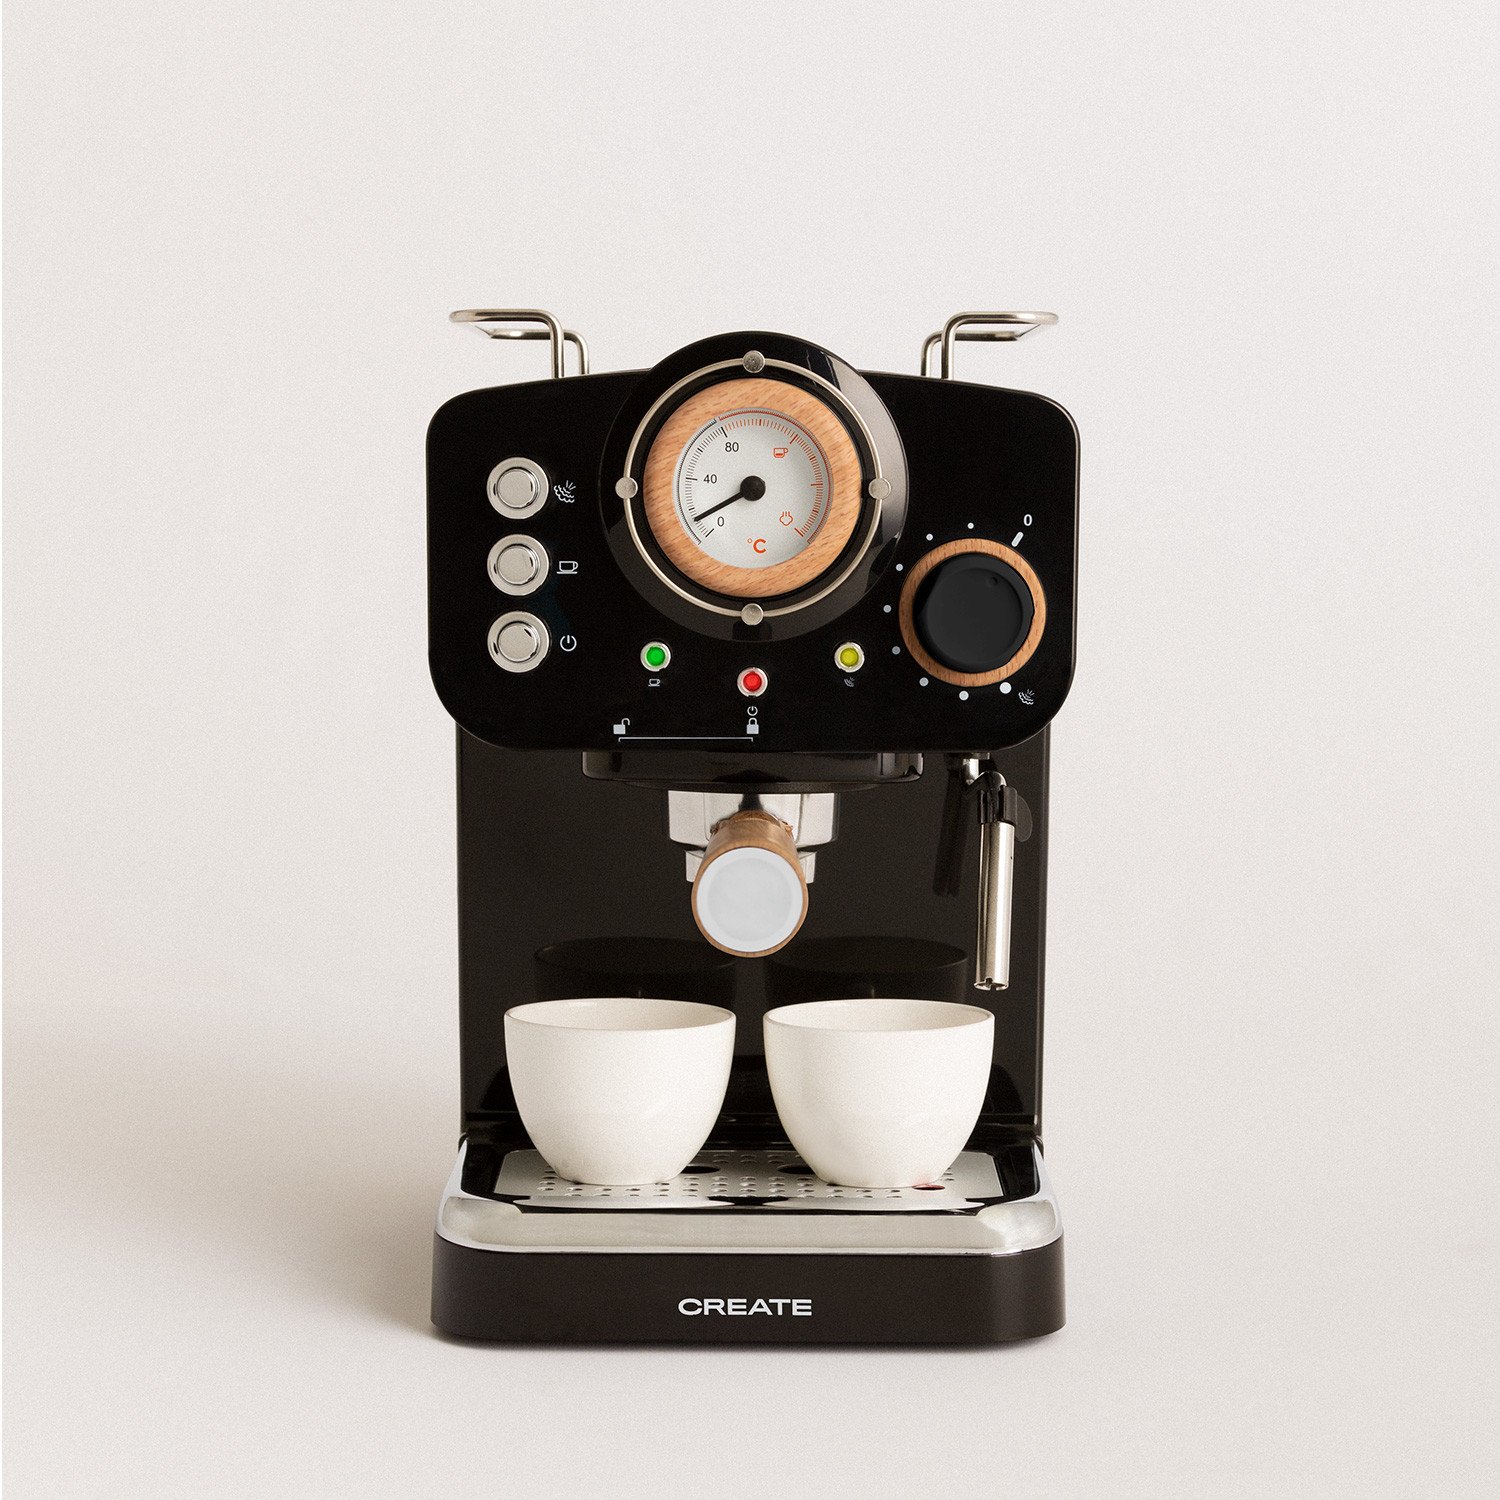 Cafetière multi-capsules compatible Nespresso 3 en 1 19 bar avec 2 programmes de café 0,6 L CREATE IKOHS Machine à café expresso italienne 1450 W réservoir amovible 